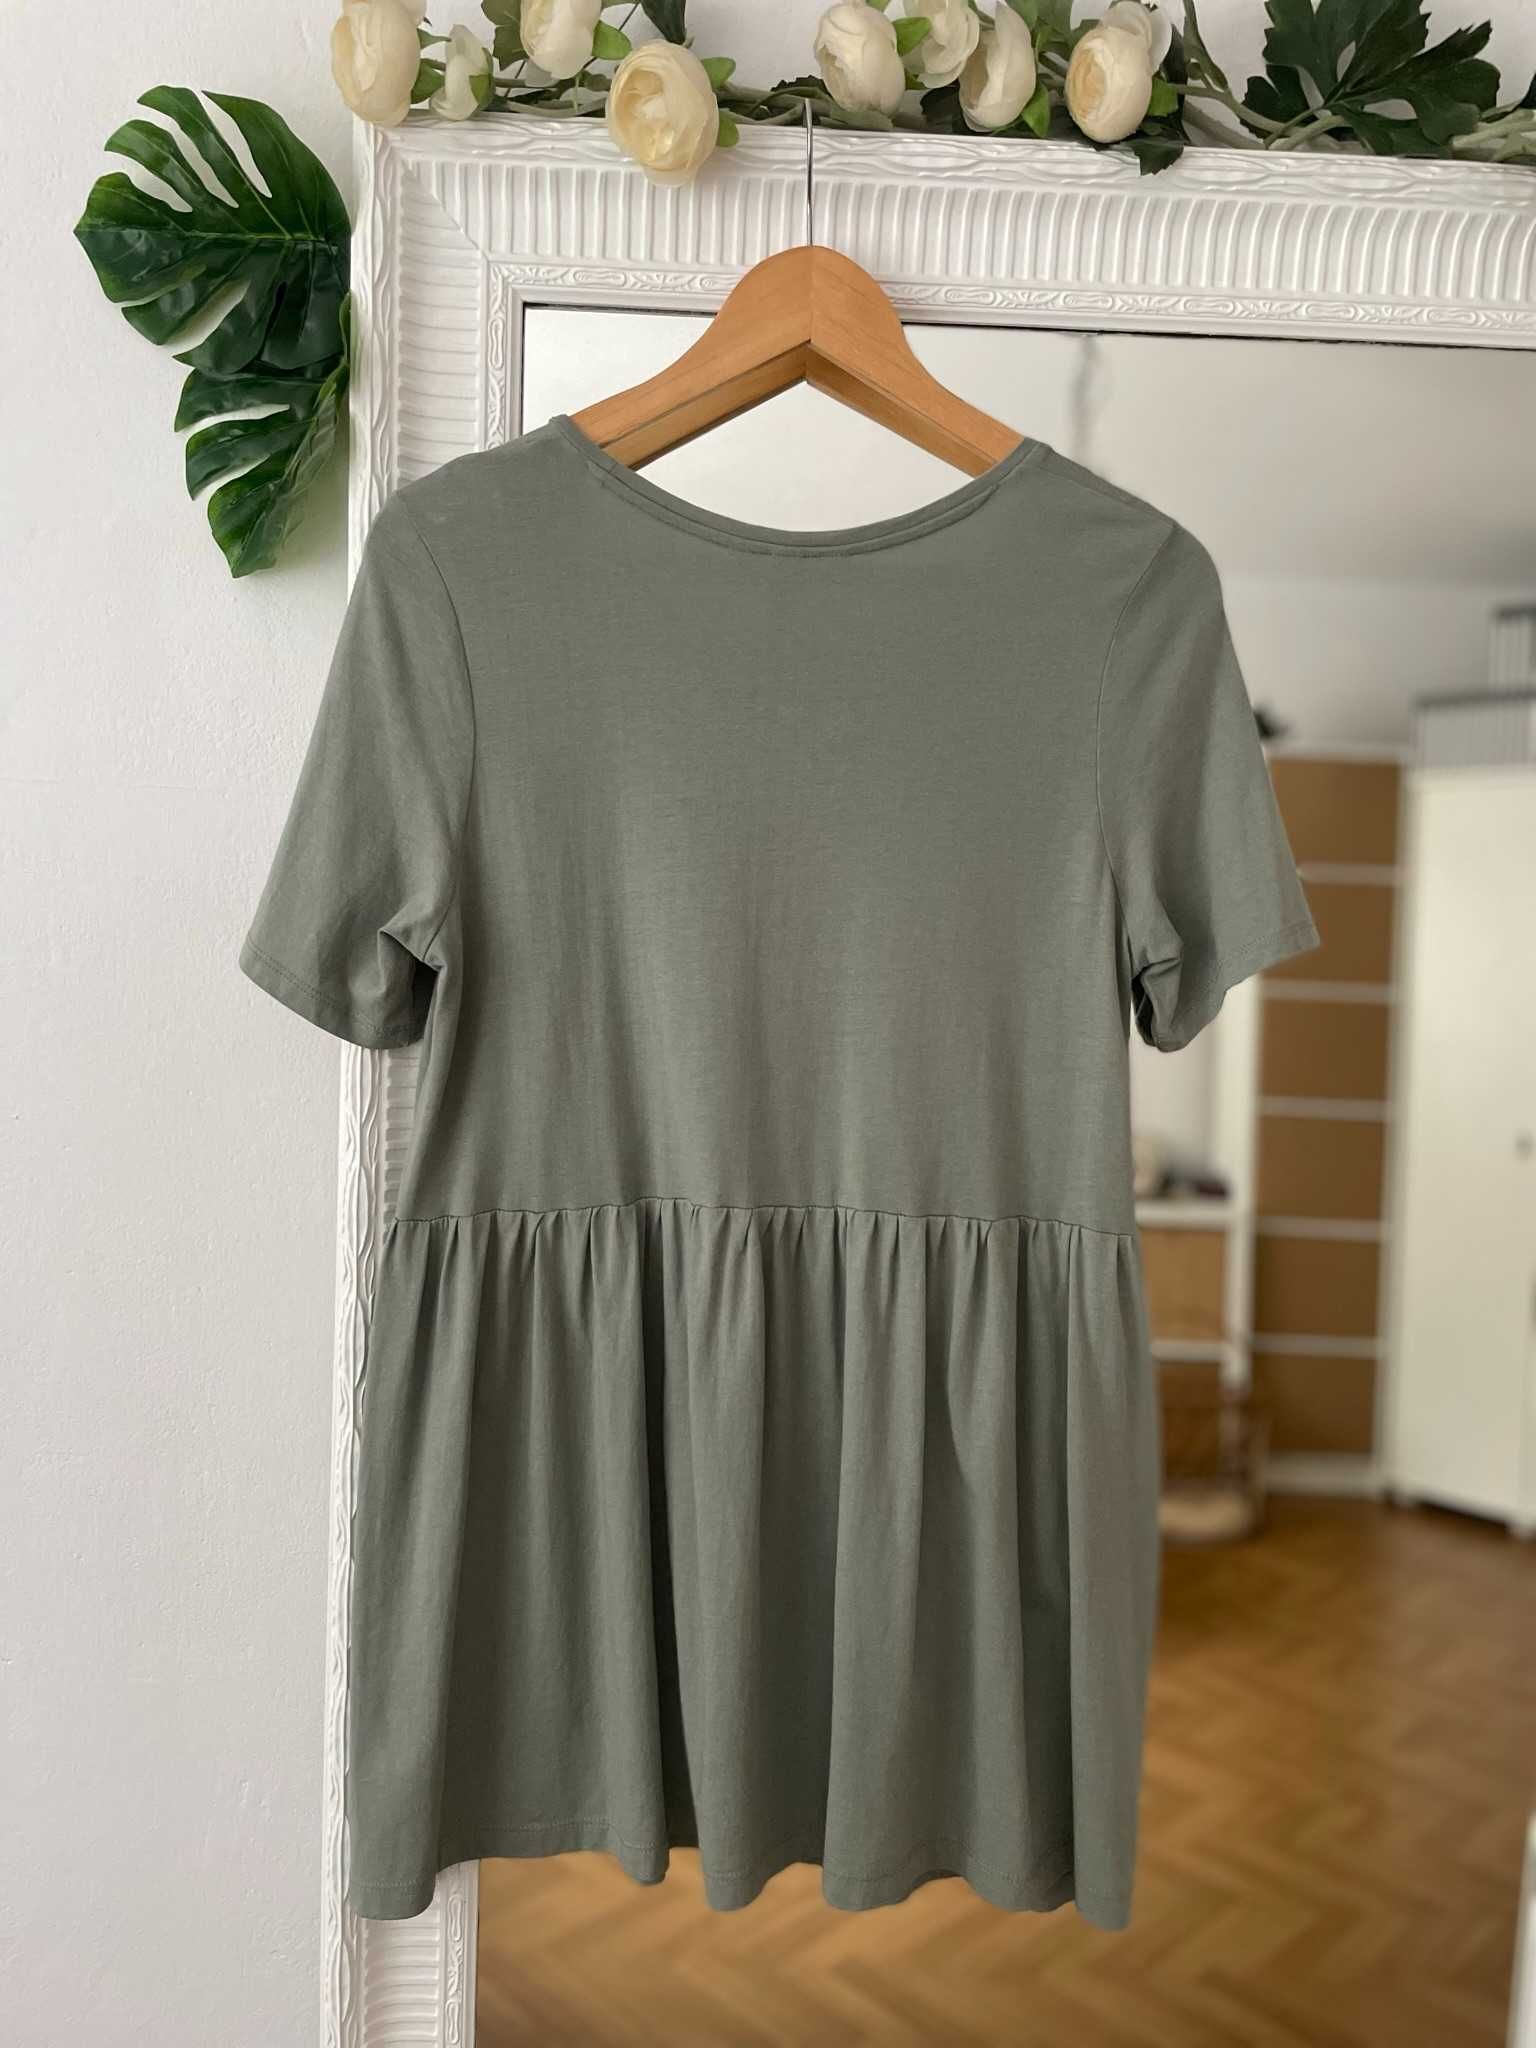 H&M mama T-shirt oliwkowy marszczenia długi tunika letni S 36 M 38